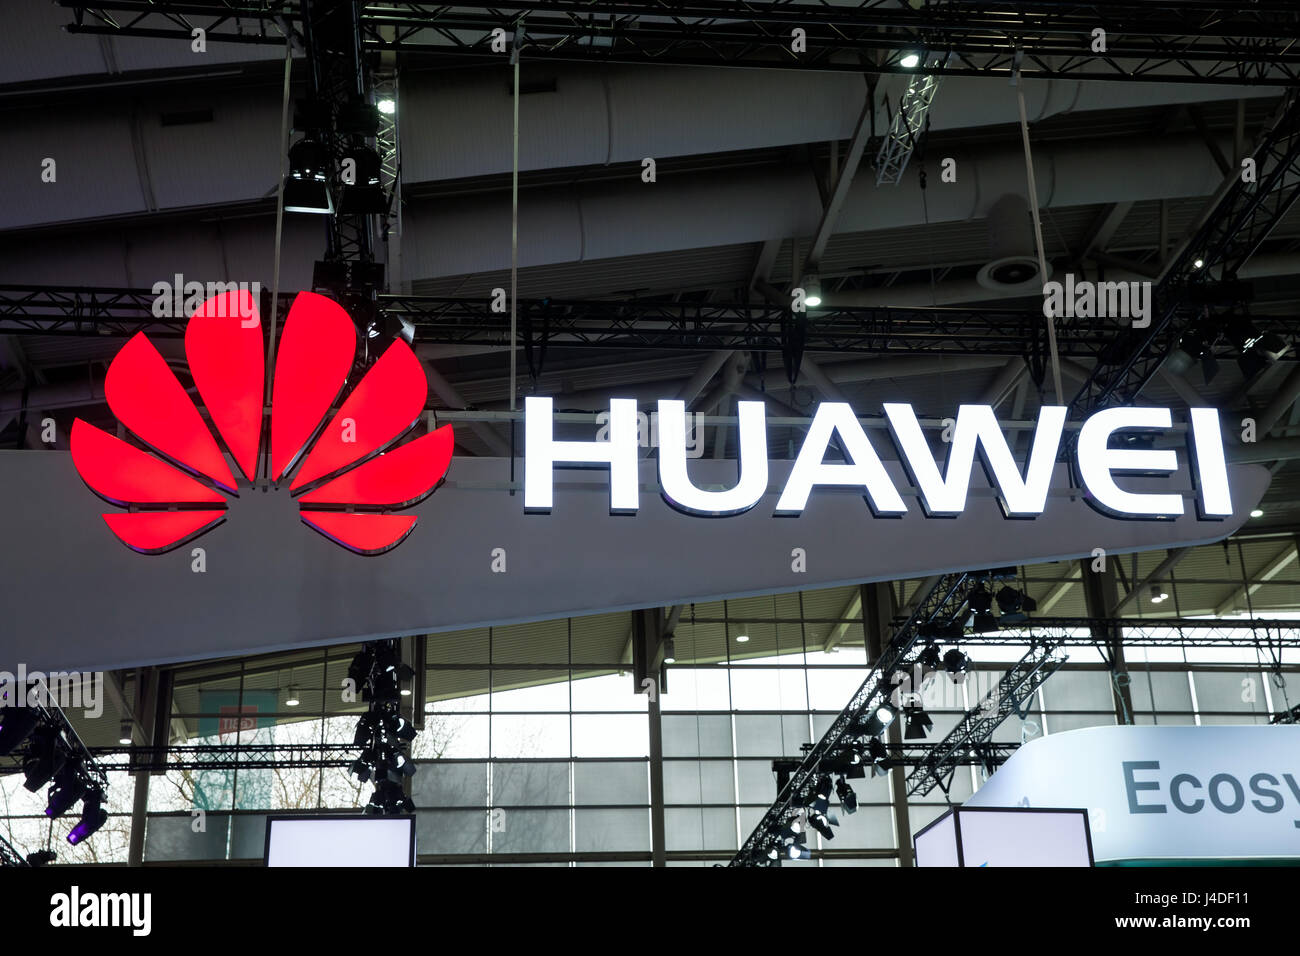 Logo de la société Huawei sur le mur. Huawei Technologies Co. est une multinationale chinoise la mise en réseau et l'équipement de télécommunications et de services Banque D'Images